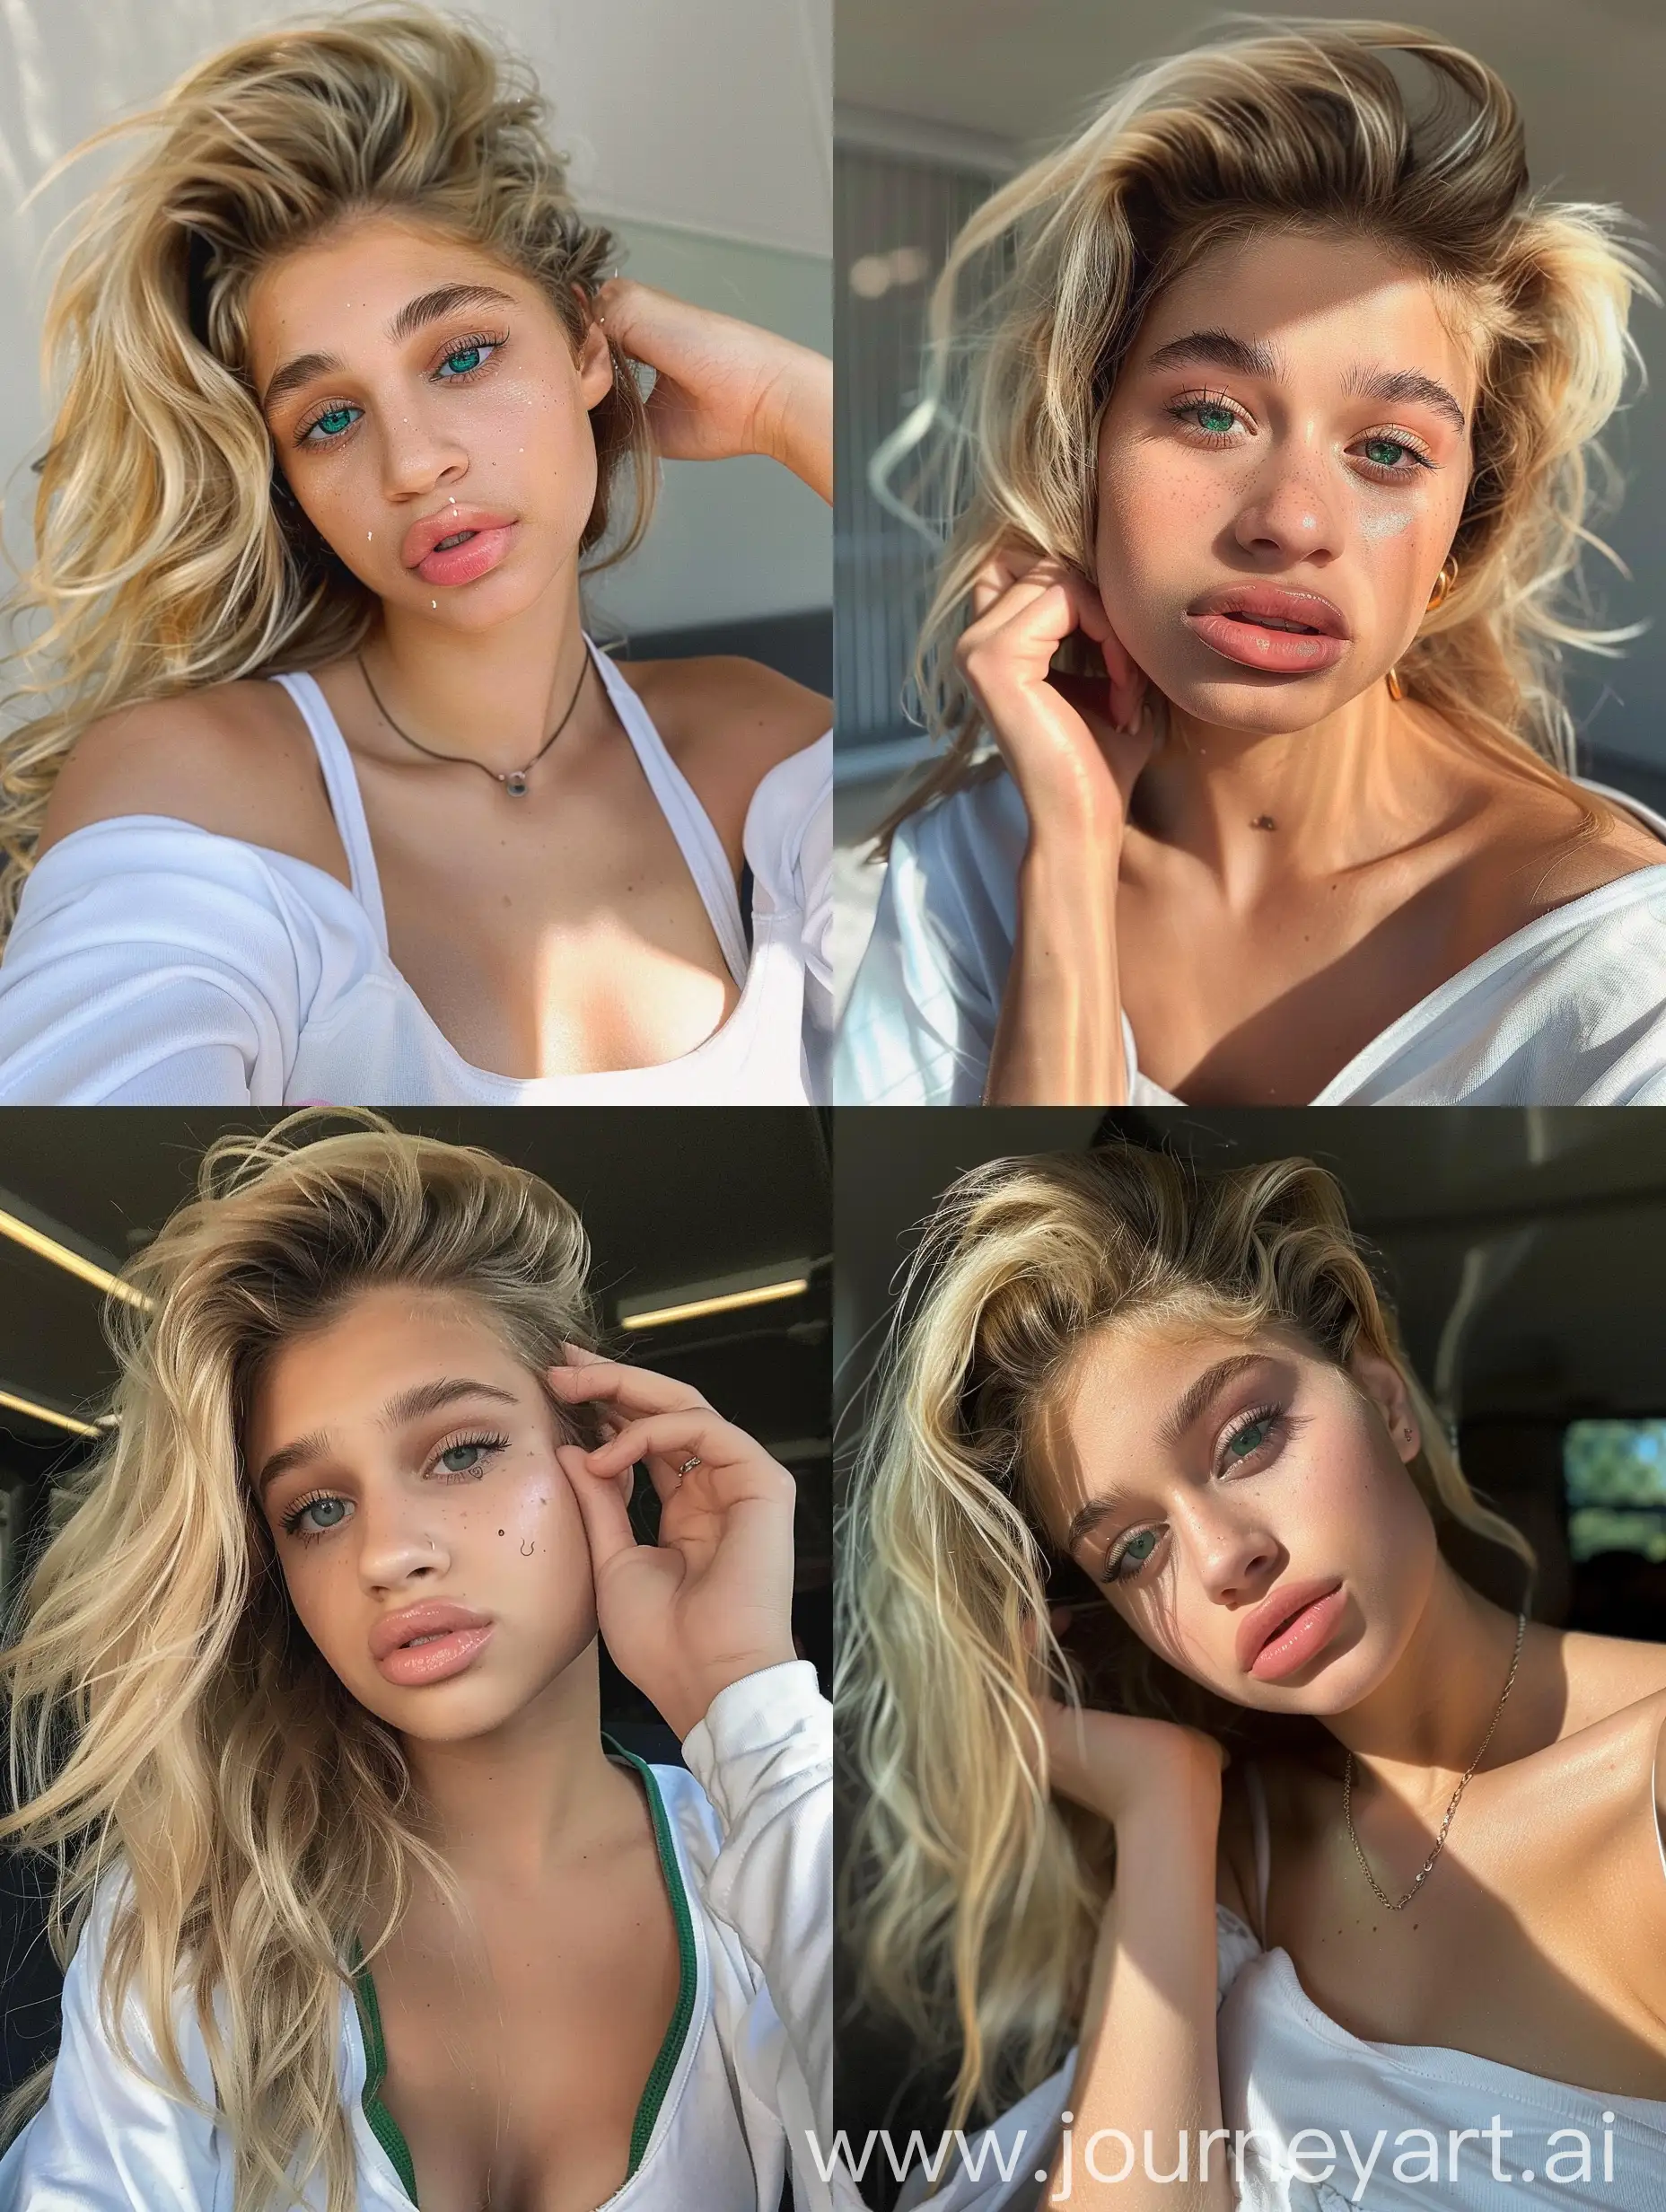 Stunning-Instagram-Selfie-of-a-Supermodel-Girl